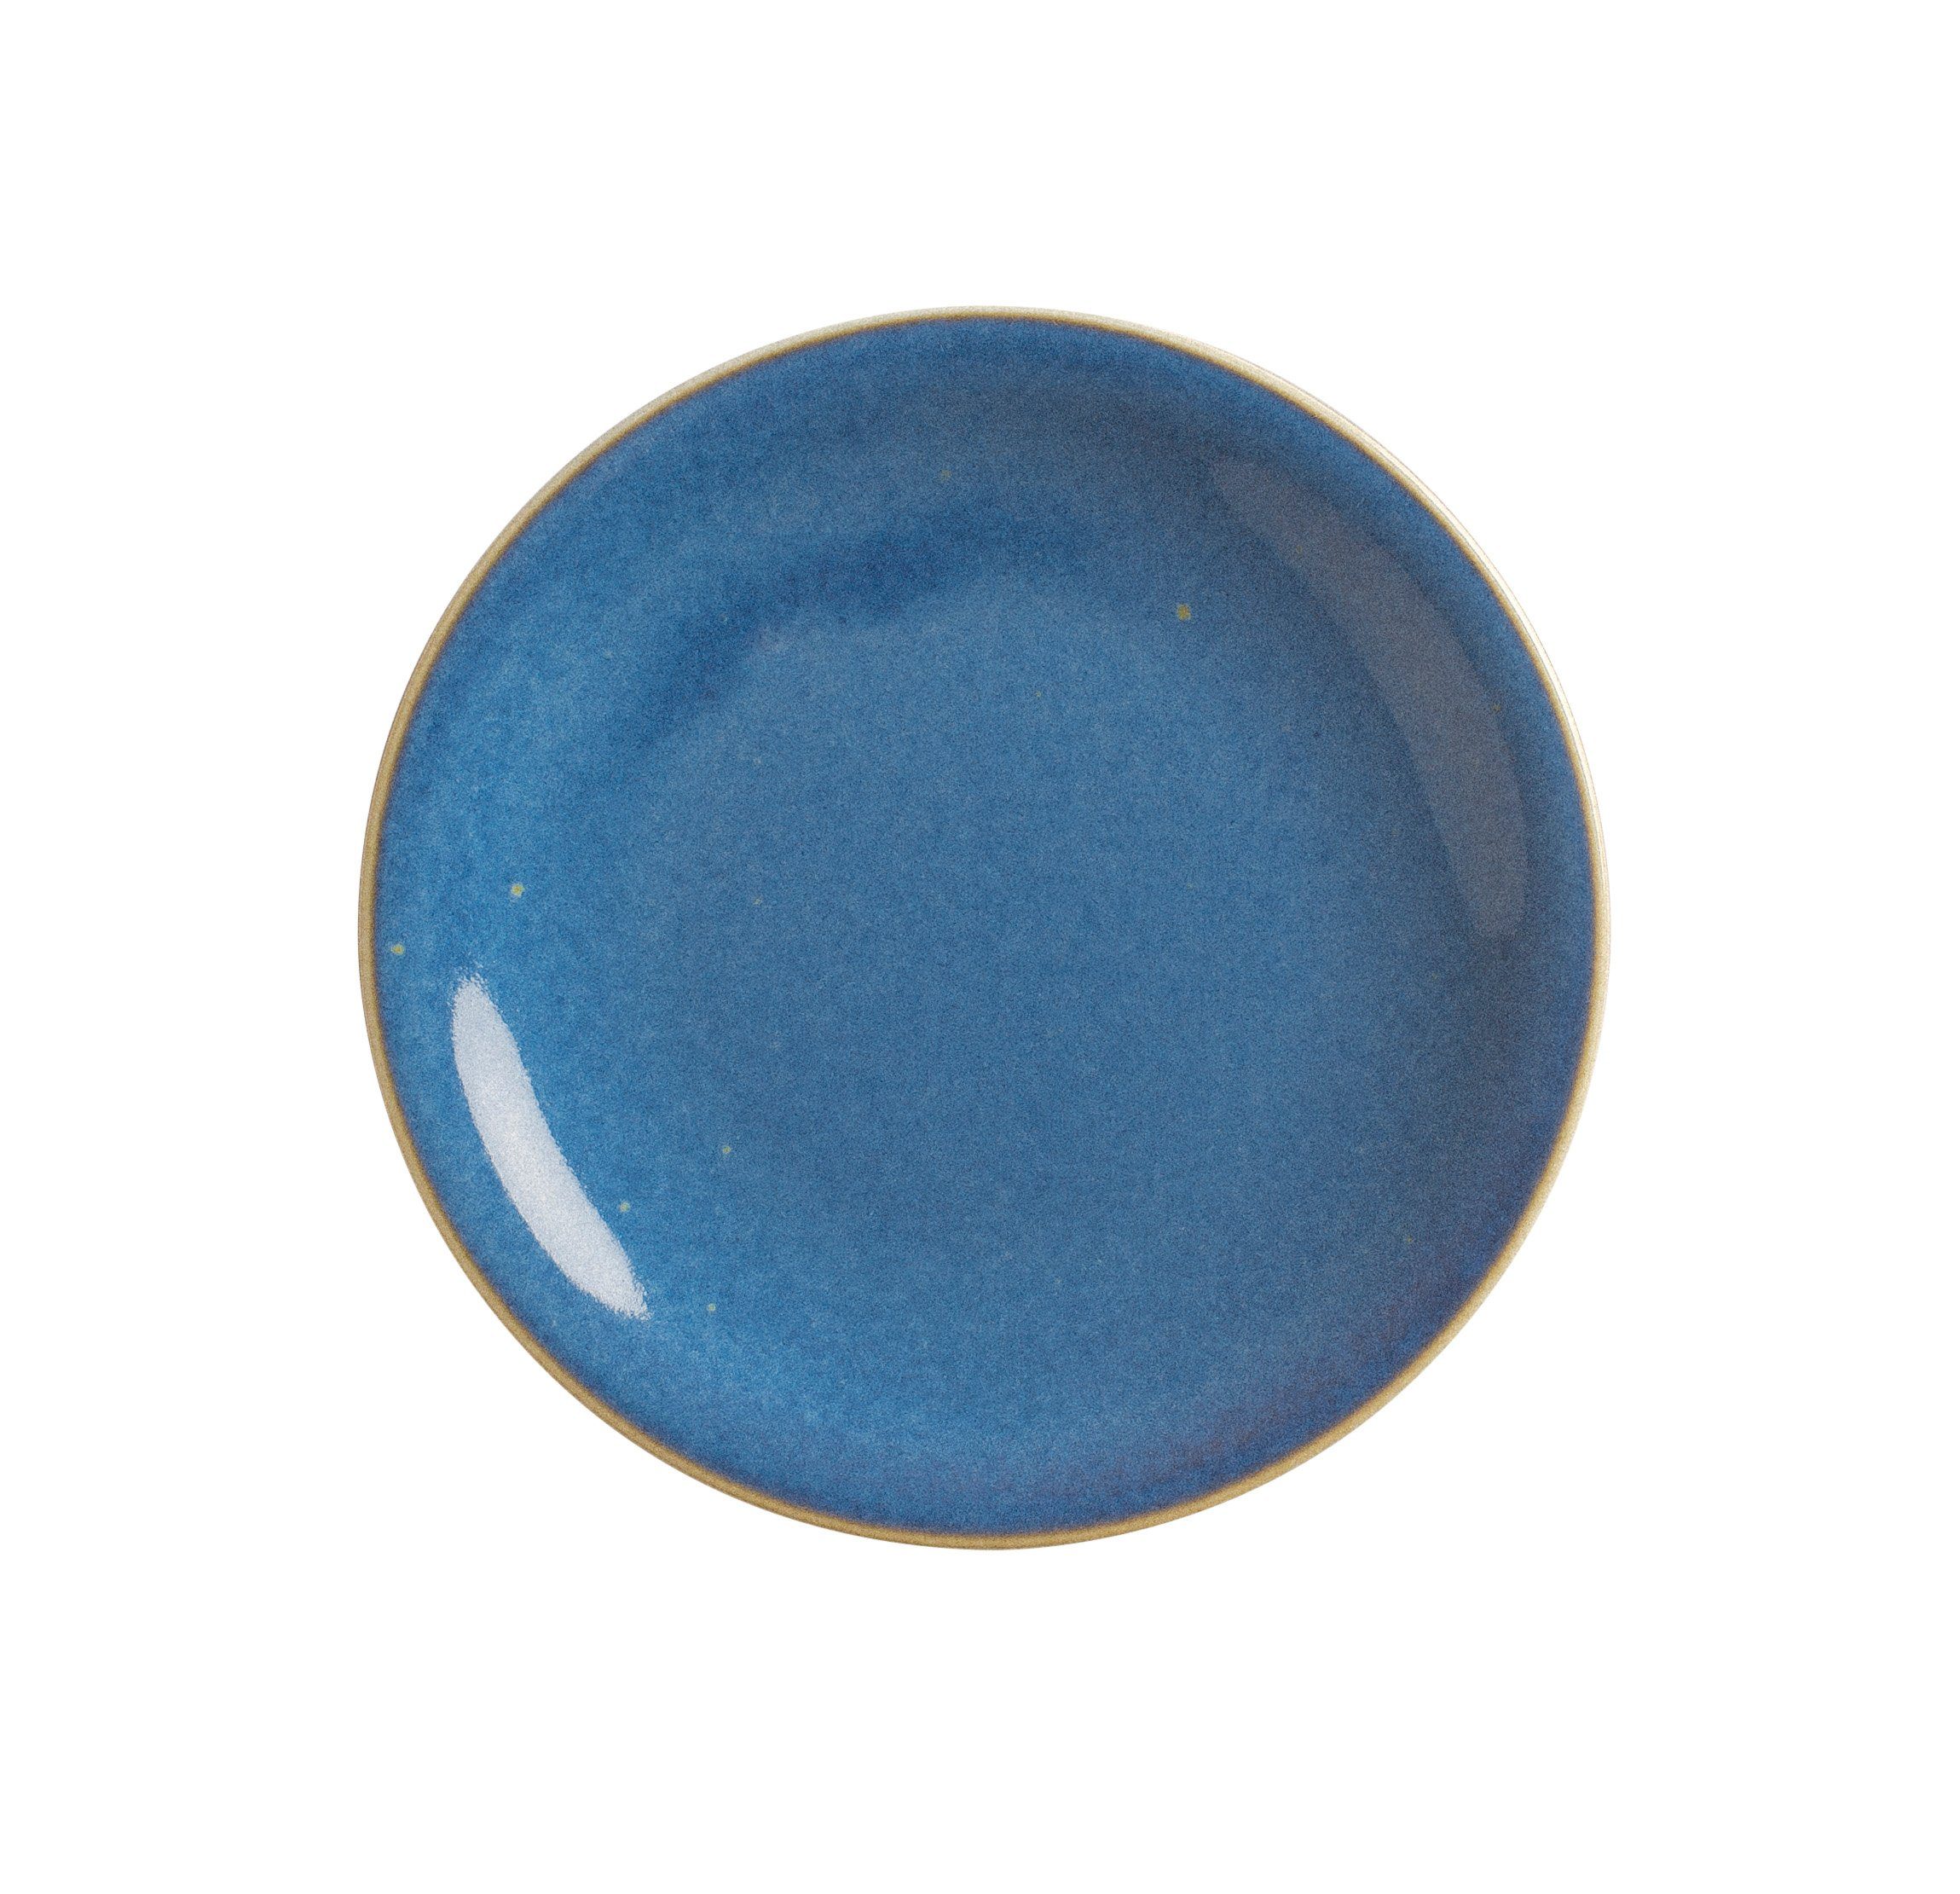 Kahla Brotteller Homestyle 16 cm, Germany blue atlantic Handglasiert, in Made